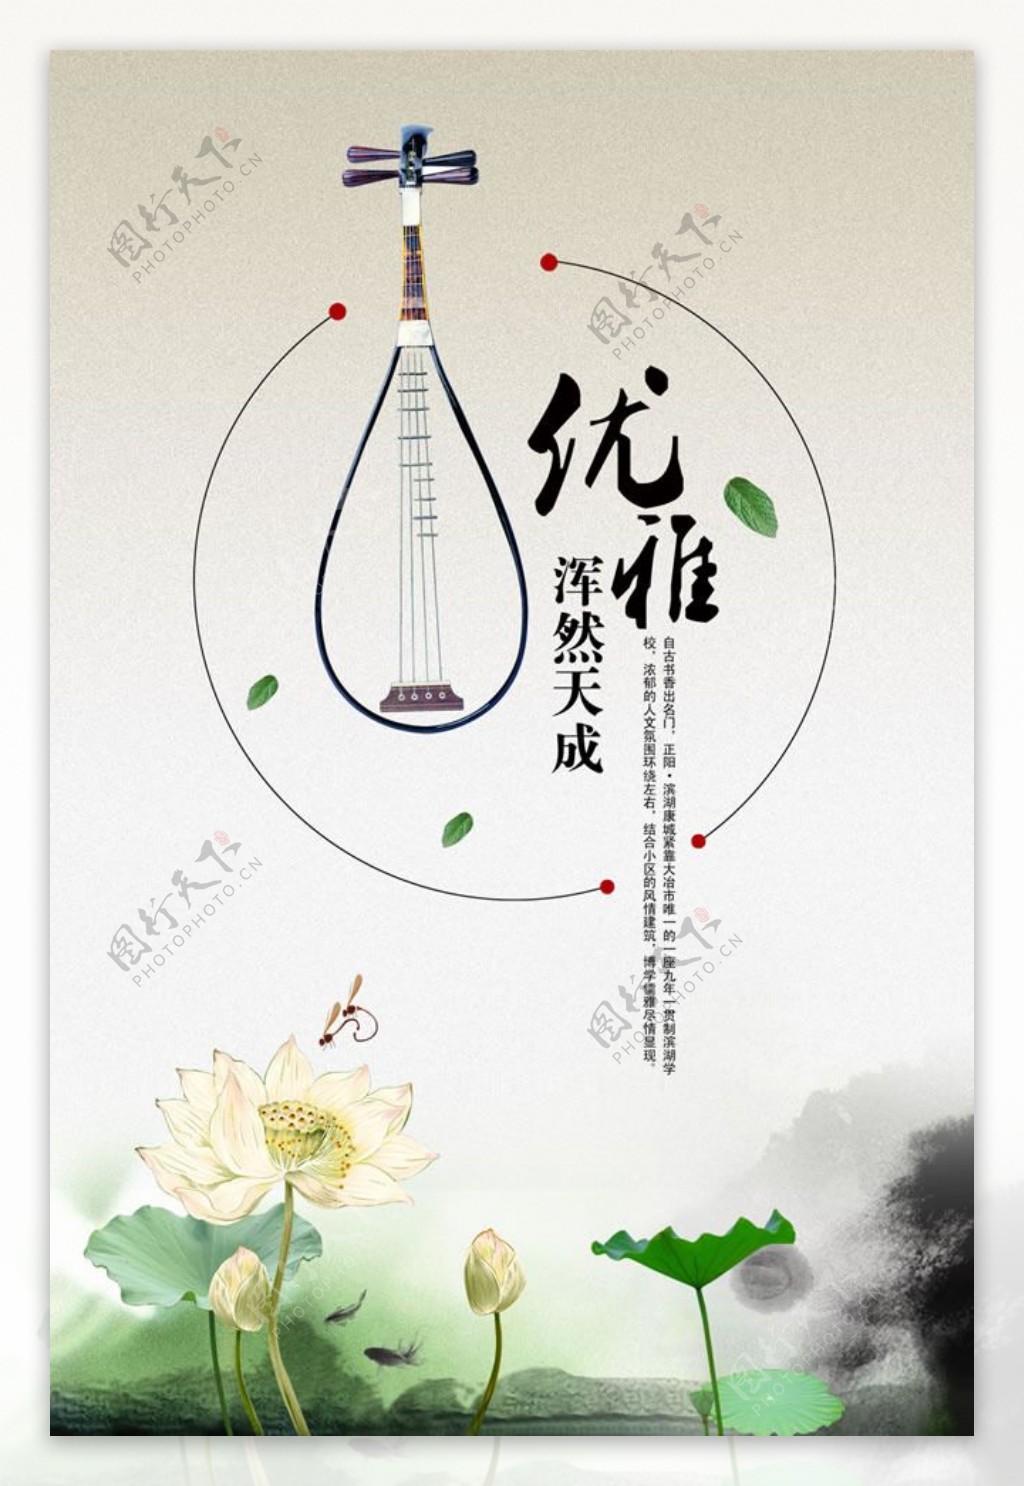 中国风人文地产海报psd素材